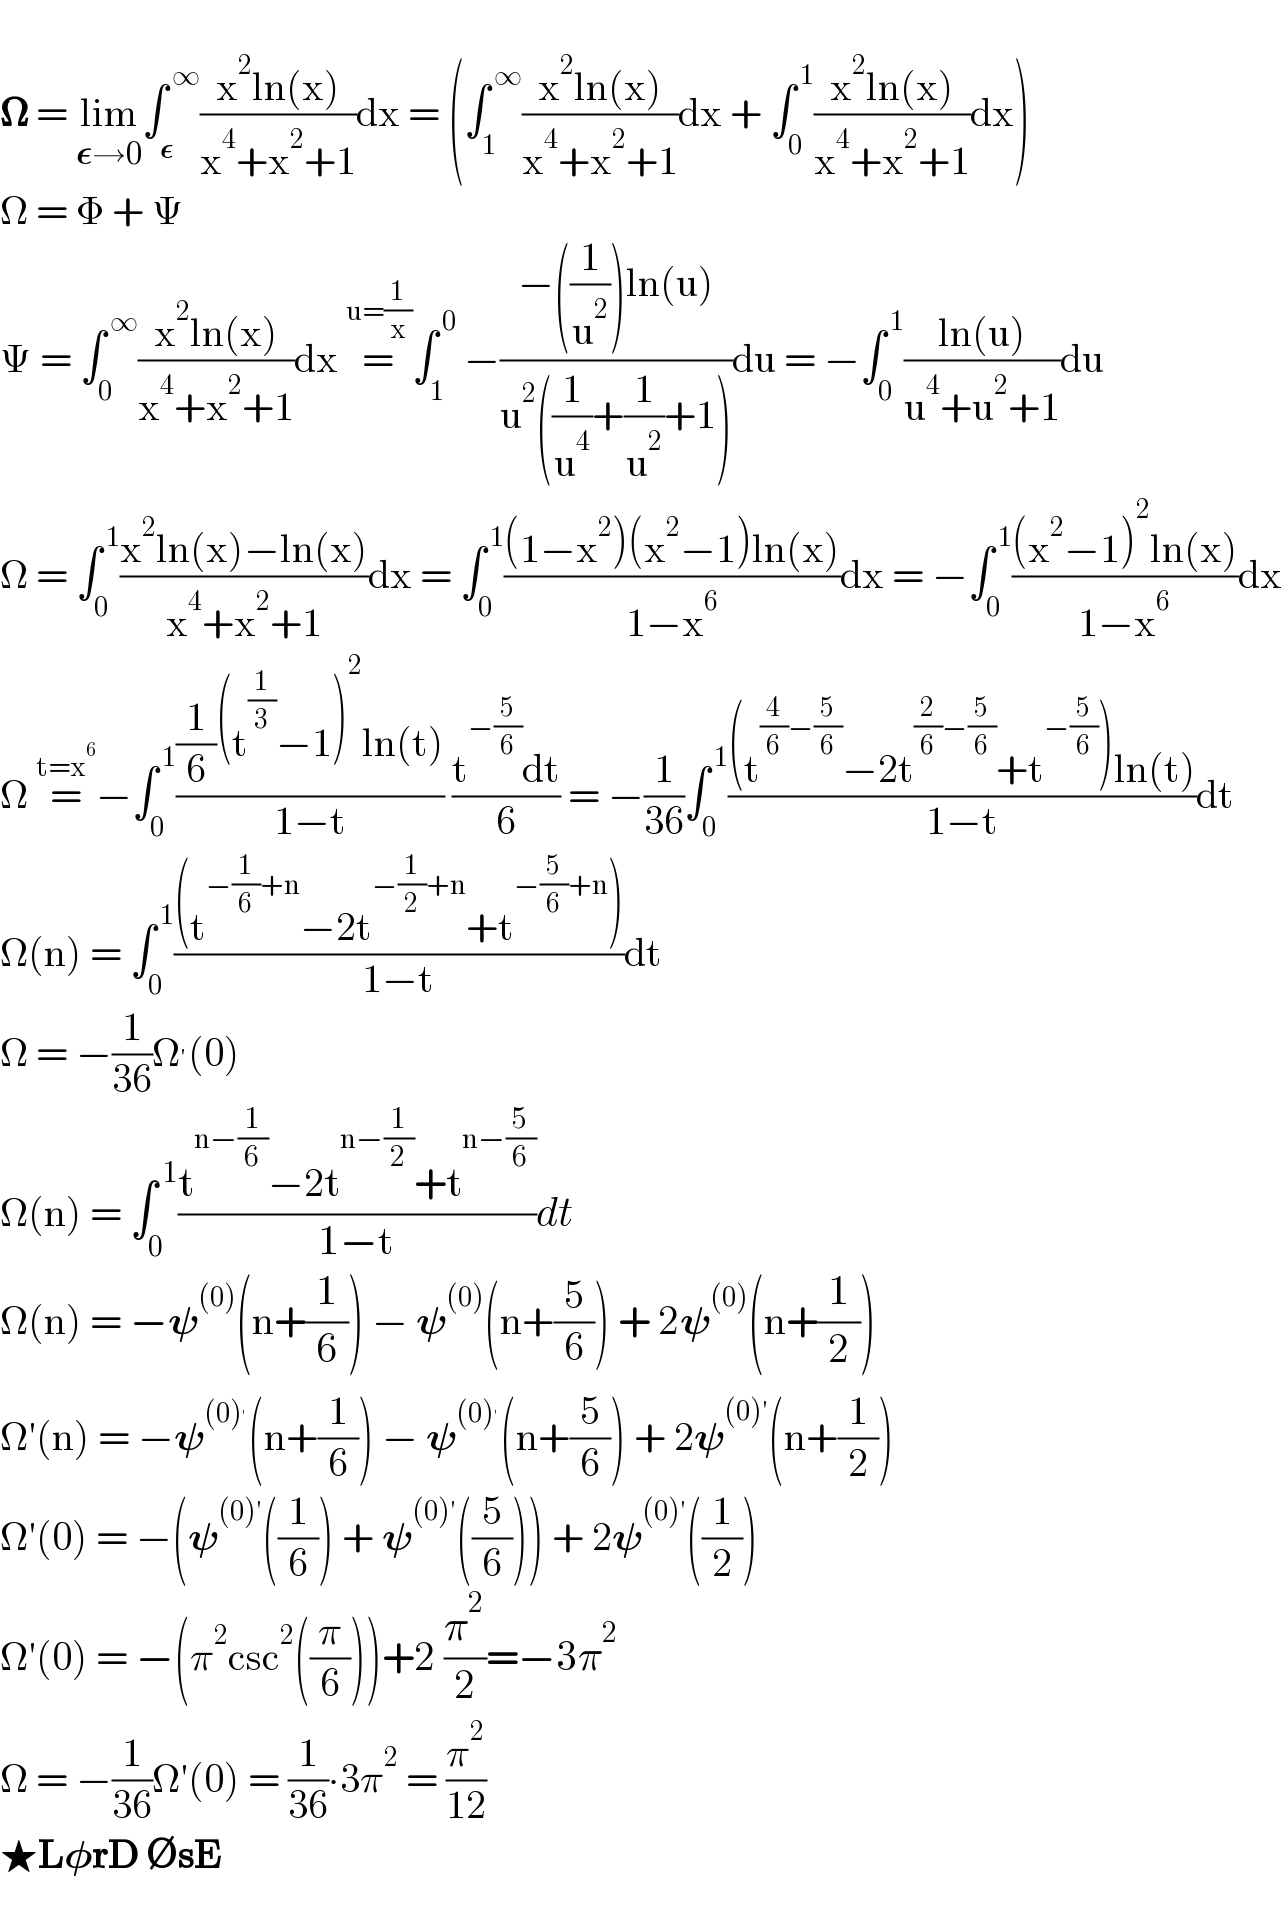   𝛀 = lim_(𝛆→0) ∫_𝛆 ^( ∞) ((x^2 ln(x))/(x^4 +x^2 +1))dx = (∫_1 ^( ∞) ((x^2 ln(x))/(x^4 +x^2 +1))dx + ∫_0 ^( 1) ((x^2 ln(x))/(x^4 +x^2 +1))dx)  Ω = Φ + Ψ  Ψ = ∫_0 ^( ∞) ((x^2 ln(x))/(x^4 +x^2 +1))dx =^(u=(1/x)) ∫_1 ^( 0)  −((−((1/u^2 ))ln(u))/(u^2 ((1/u^4 )+(1/u^2 )+1)))du = −∫_0 ^( 1) ((ln(u))/(u^4 +u^2 +1))du  Ω = ∫_0 ^( 1) ((x^2 ln(x)−ln(x))/(x^4 +x^2 +1))dx = ∫_0 ^( 1) (((1−x^2 )(x^2 −1)ln(x))/(1−x^6 ))dx = −∫_0 ^( 1) (((x^2 −1)^2 ln(x))/(1−x^6 ))dx  Ω =^(t=x^6 ) −∫_0 ^( 1) (((1/6)(t^(1/3) −1)^2 ln(t))/(1−t)) ((t^(−(5/6)) dt)/6) = −(1/(36))∫_0 ^( 1) (((t^((4/6)−(5/6)) −2t^((2/6)−(5/6)) +t^(−(5/6)) )ln(t))/(1−t))dt  Ω(n) = ∫_0 ^( 1) (((t^(−(1/6)+n) −2t^(−(1/2)+n) +t^(−(5/6)+n) ))/(1−t))dt  Ω = −(1/(36))Ω^′ (0)  Ω(n) = ∫_0 ^( 1) ((t^(n−(1/6)) −2t^(n−(1/2)) +t^(n−(5/6)) )/(1−t))dt  Ω(n) = −𝛙^((0)) (n+(1/6)) − 𝛙^((0)) (n+(5/6)) + 2𝛙^((0)) (n+(1/2))  Ω′(n) = −𝛙^((0)^′ ) (n+(1/6)) − 𝛙^((0)^′ ) (n+(5/6)) + 2𝛙^((0)′) (n+(1/2))  Ω′(0) = −(𝛙^((0)′) ((1/6)) + 𝛙^((0)′) ((5/6))) + 2𝛙^((0)′) ((1/2))  Ω′(0) = −(π^2 csc^2 ((π/6)))+2 (π^2 /2)=−3π^2   Ω = −(1/(36))Ω′(0) = (1/(36))∙3π^2  = (π^2 /(12))  ★L𝛗rD ∅sE  